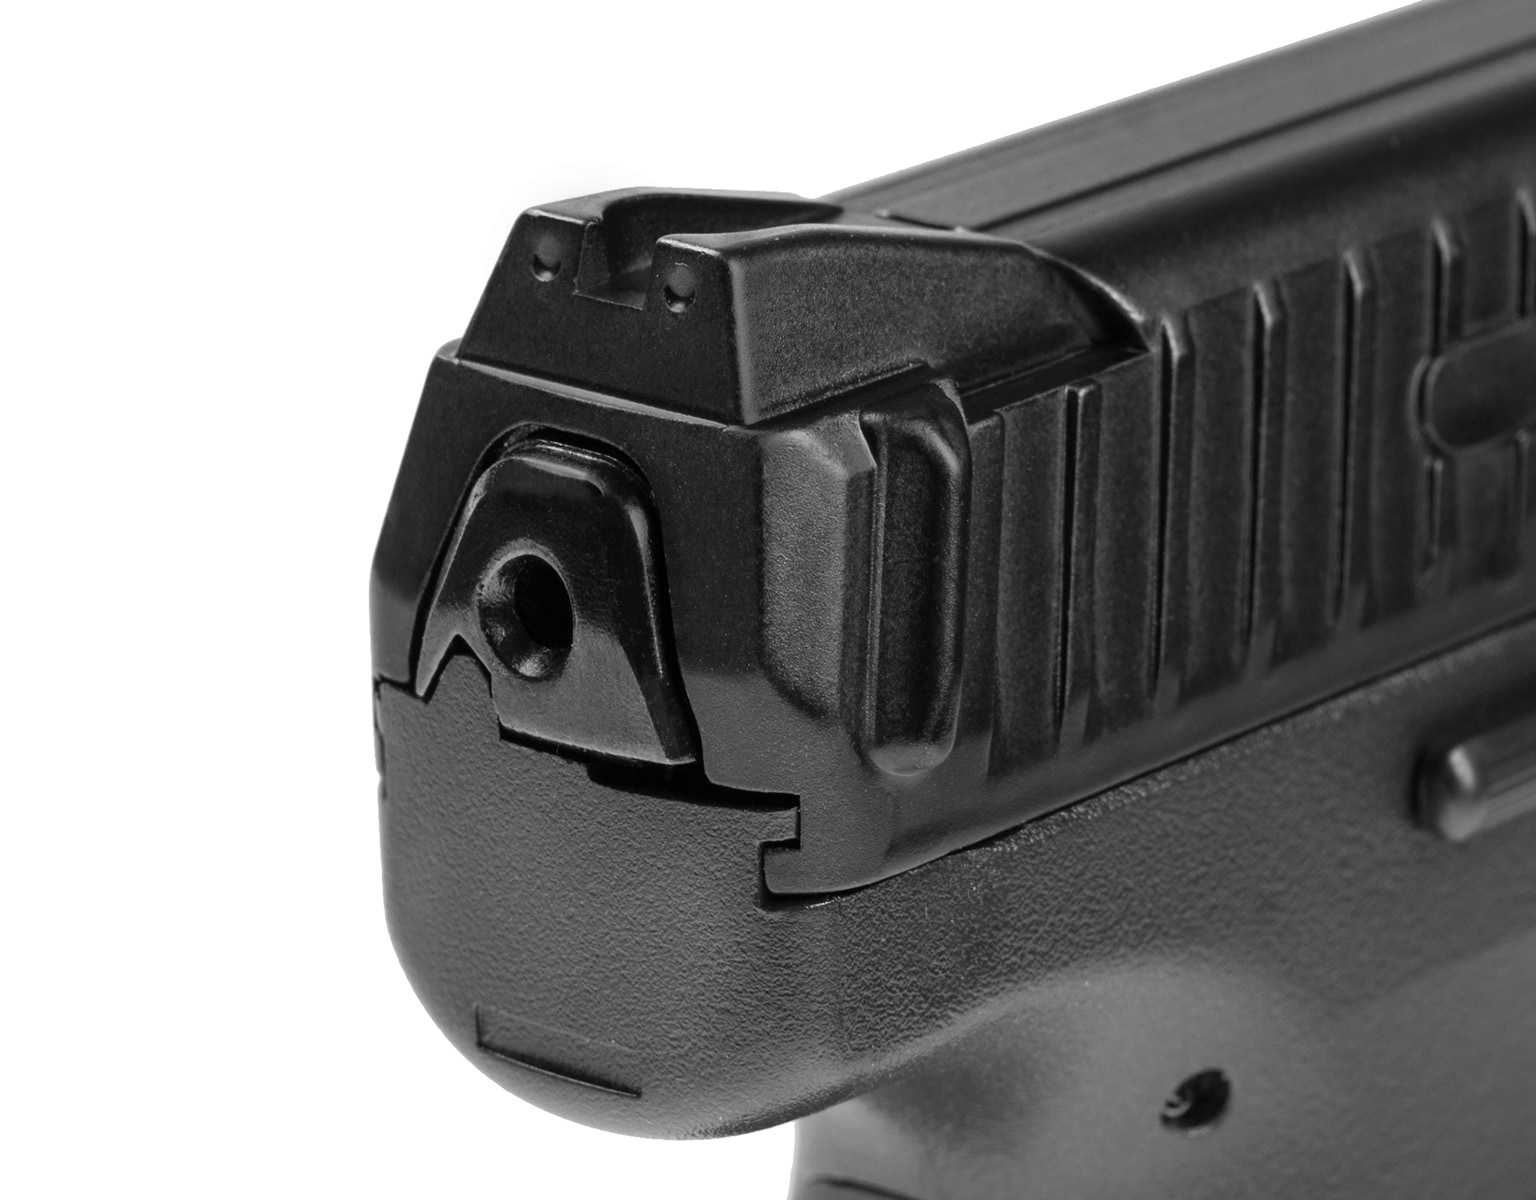 Pistolet ASG Heckler&Koch VP9 - metal slide